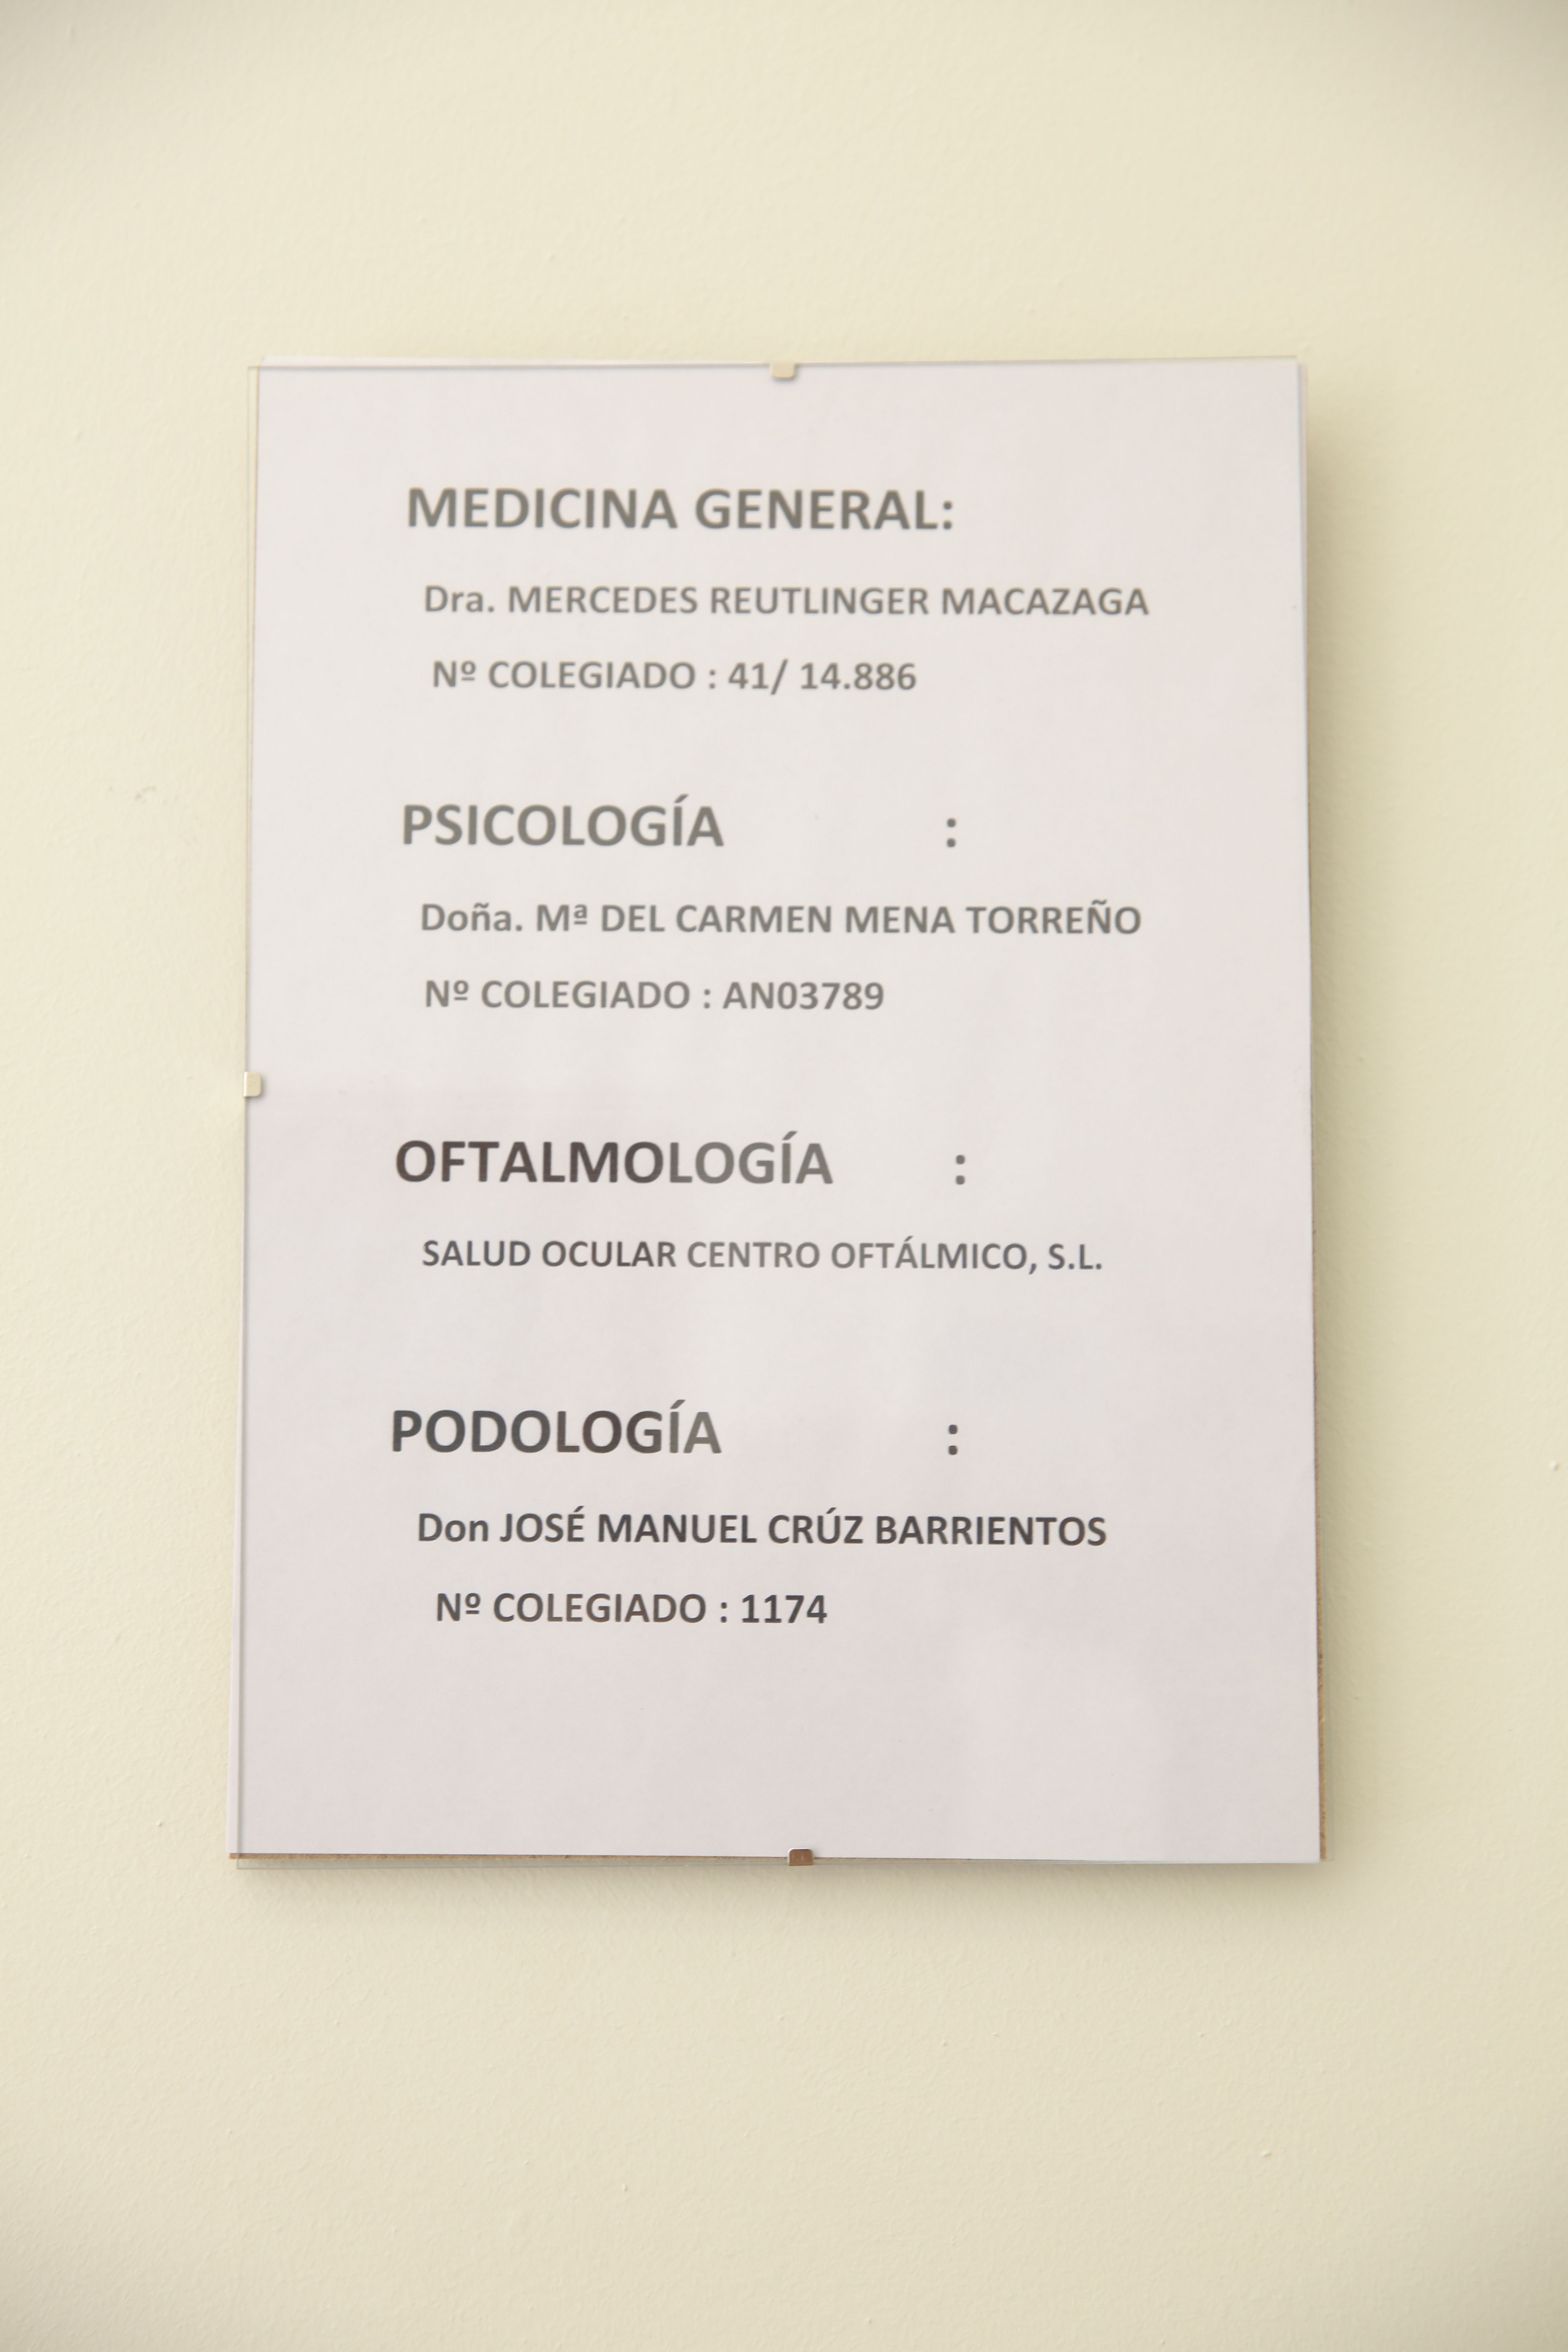 Foto 11 de Reconocimientos y certificados médicos en La Rinconada | Rincomed